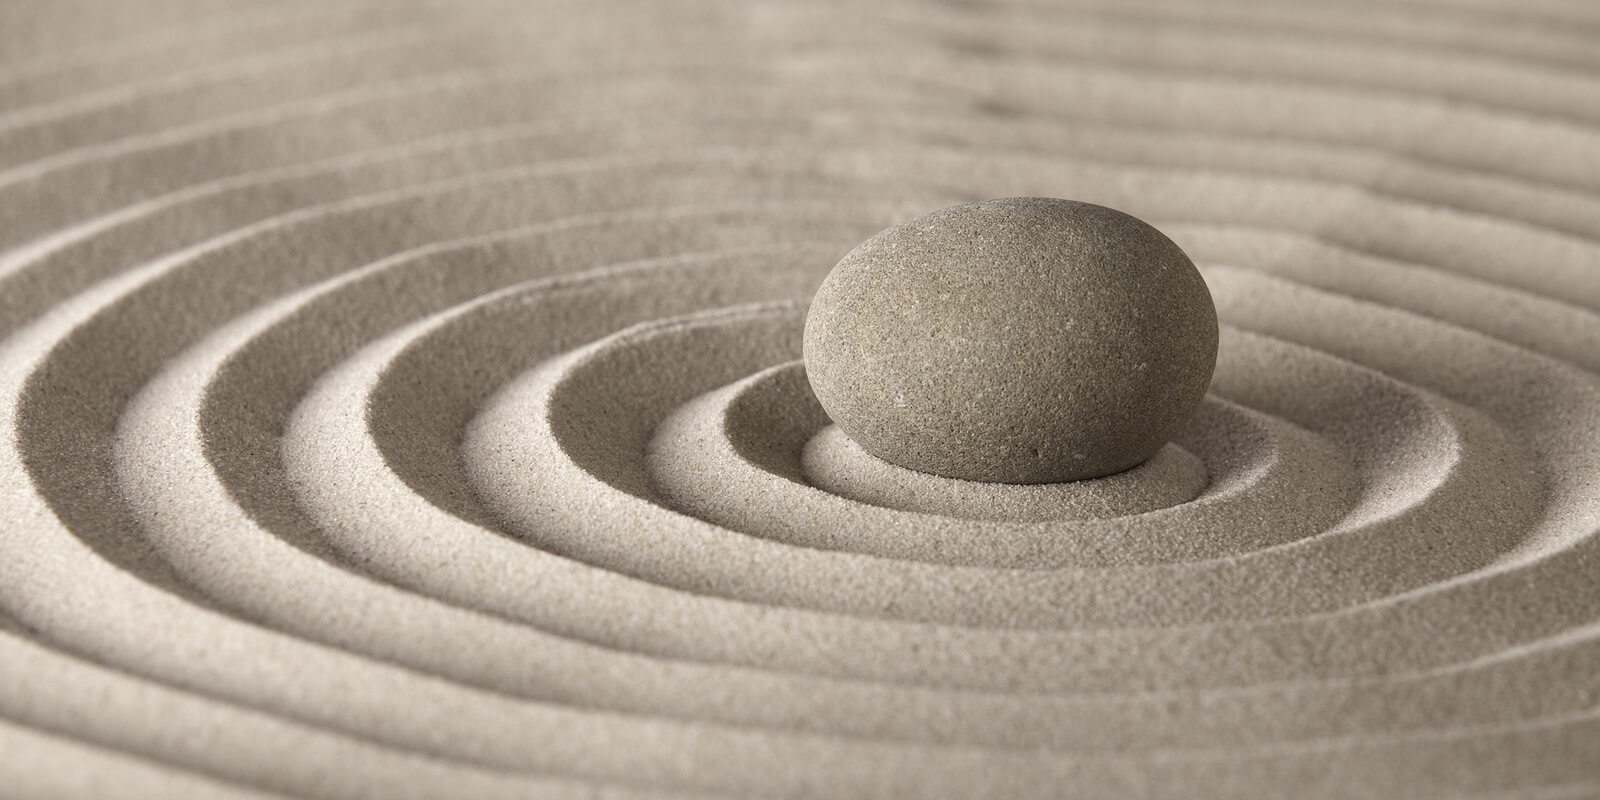 Round rock in the center of a Zen sand-garden.